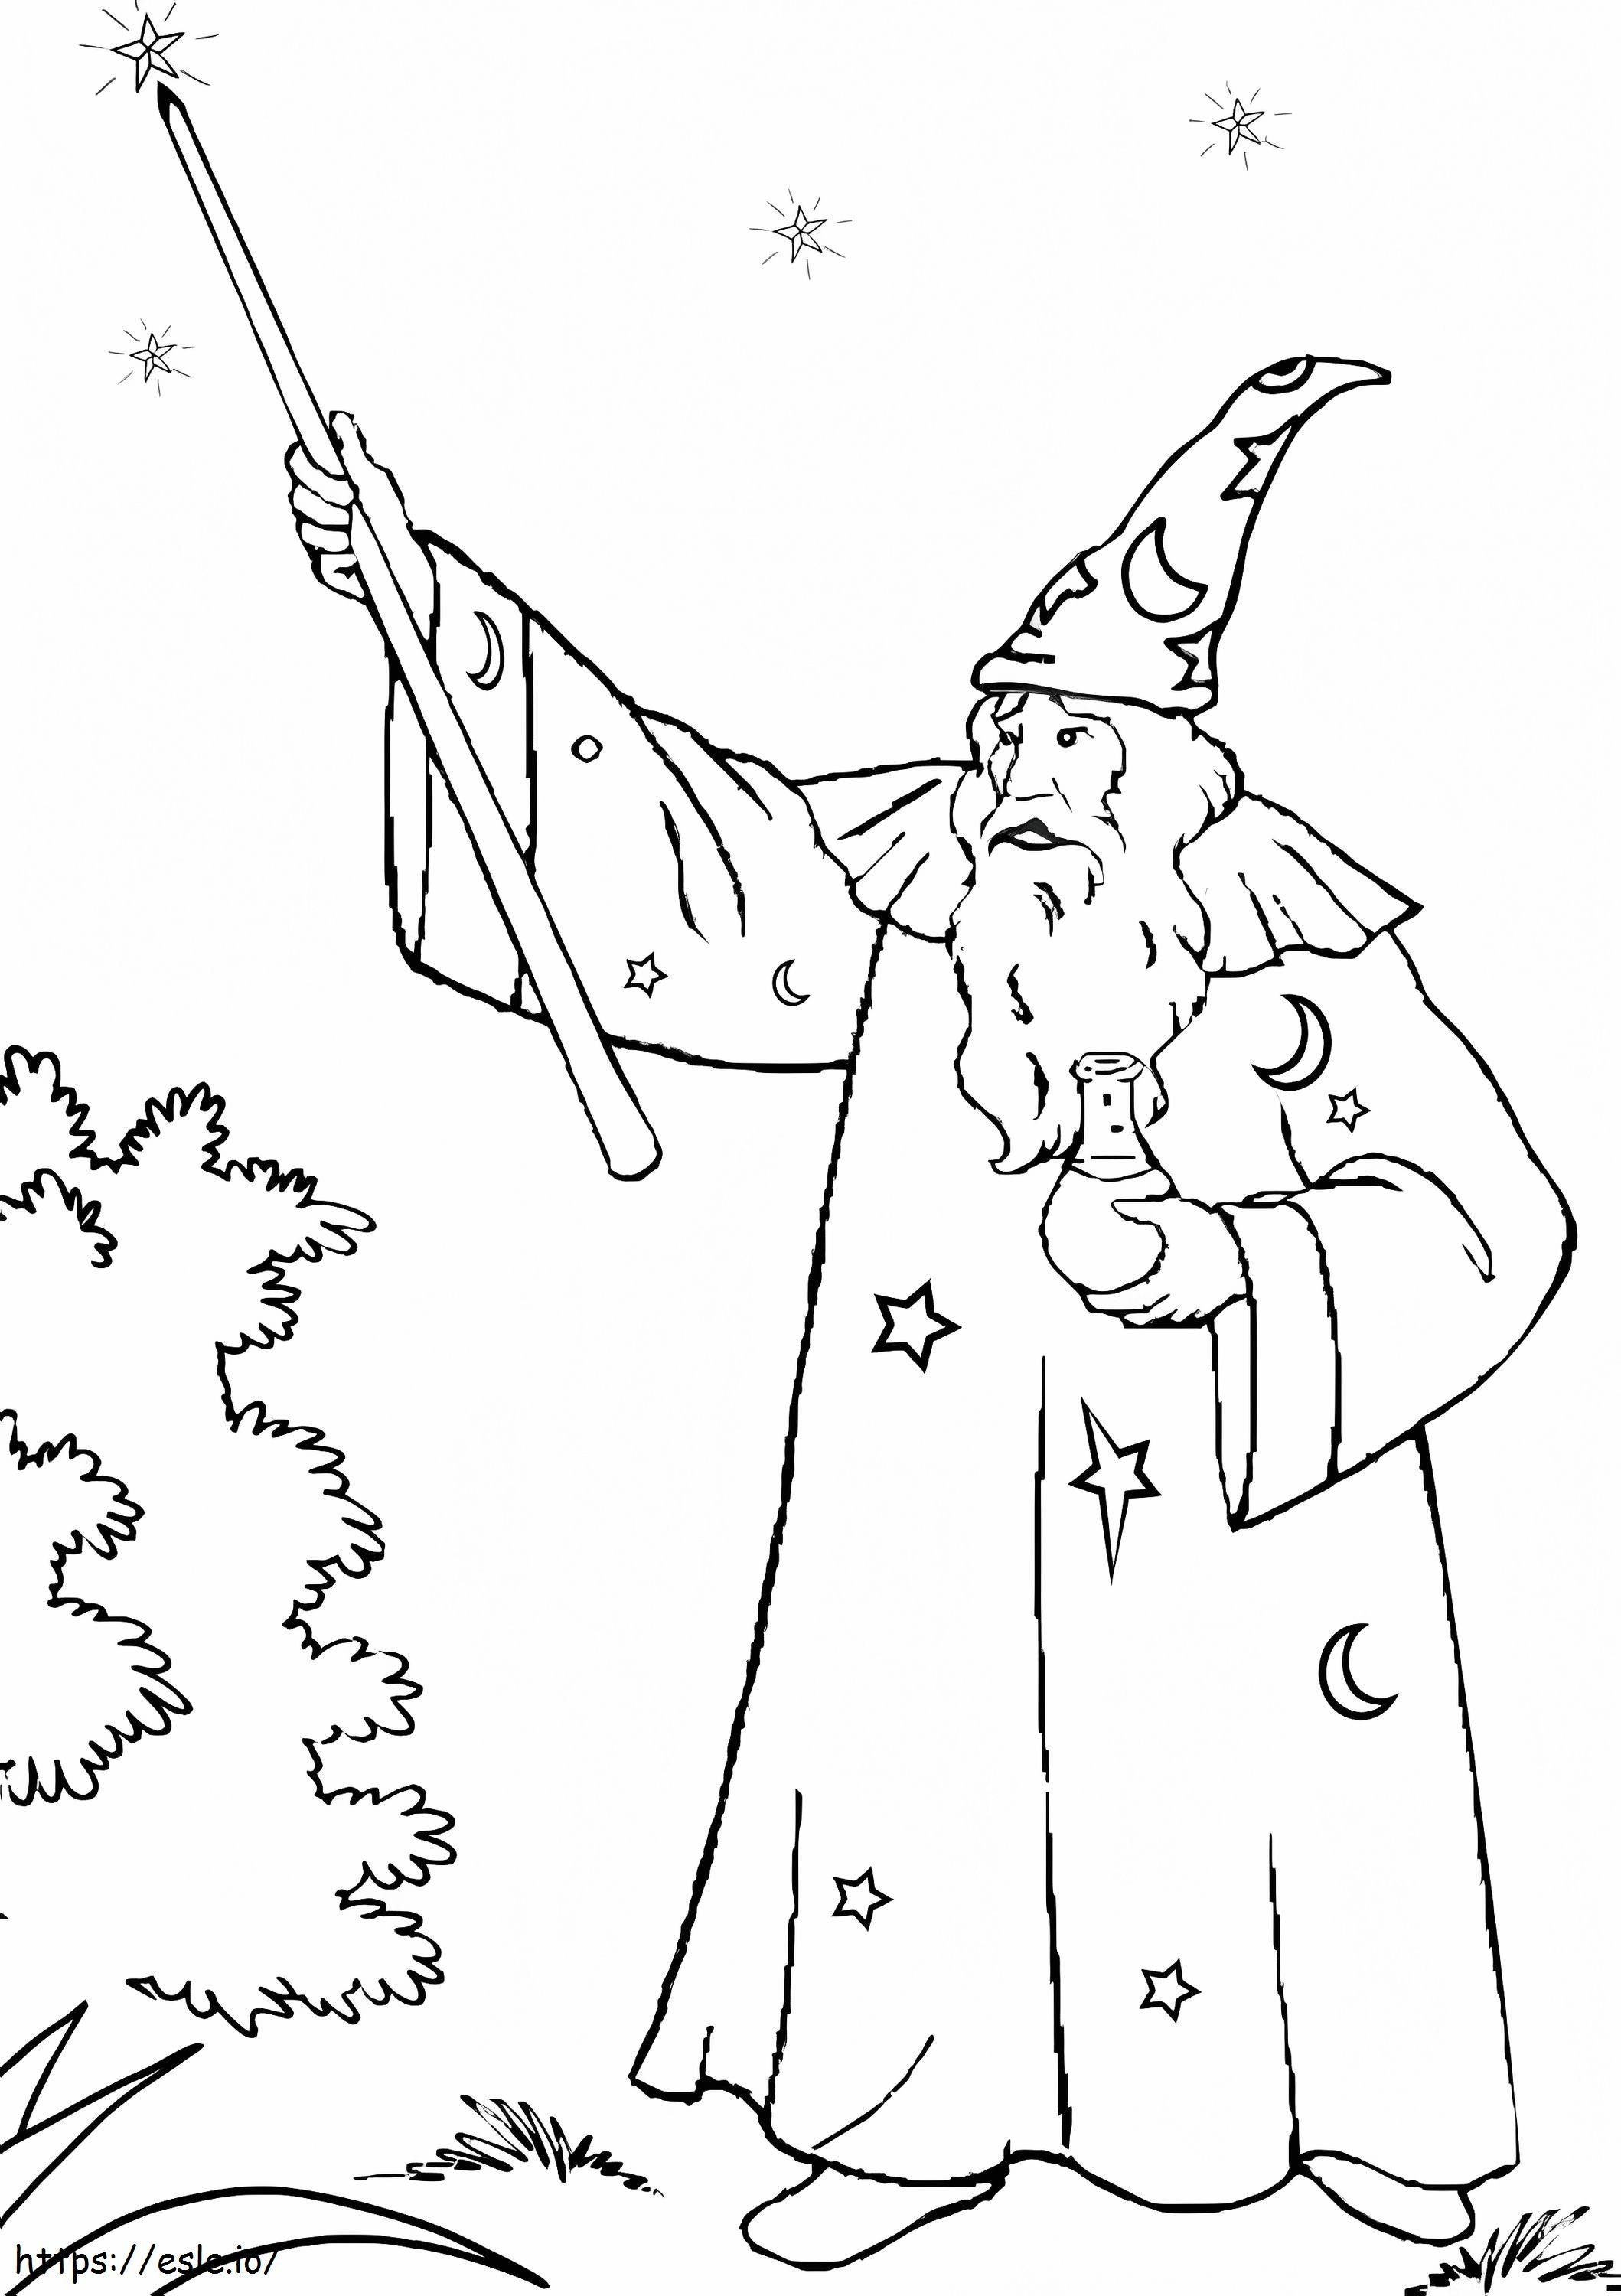 Merlin Sang Penyihir Memegang Tongkat Ajaib Gambar Mewarnai